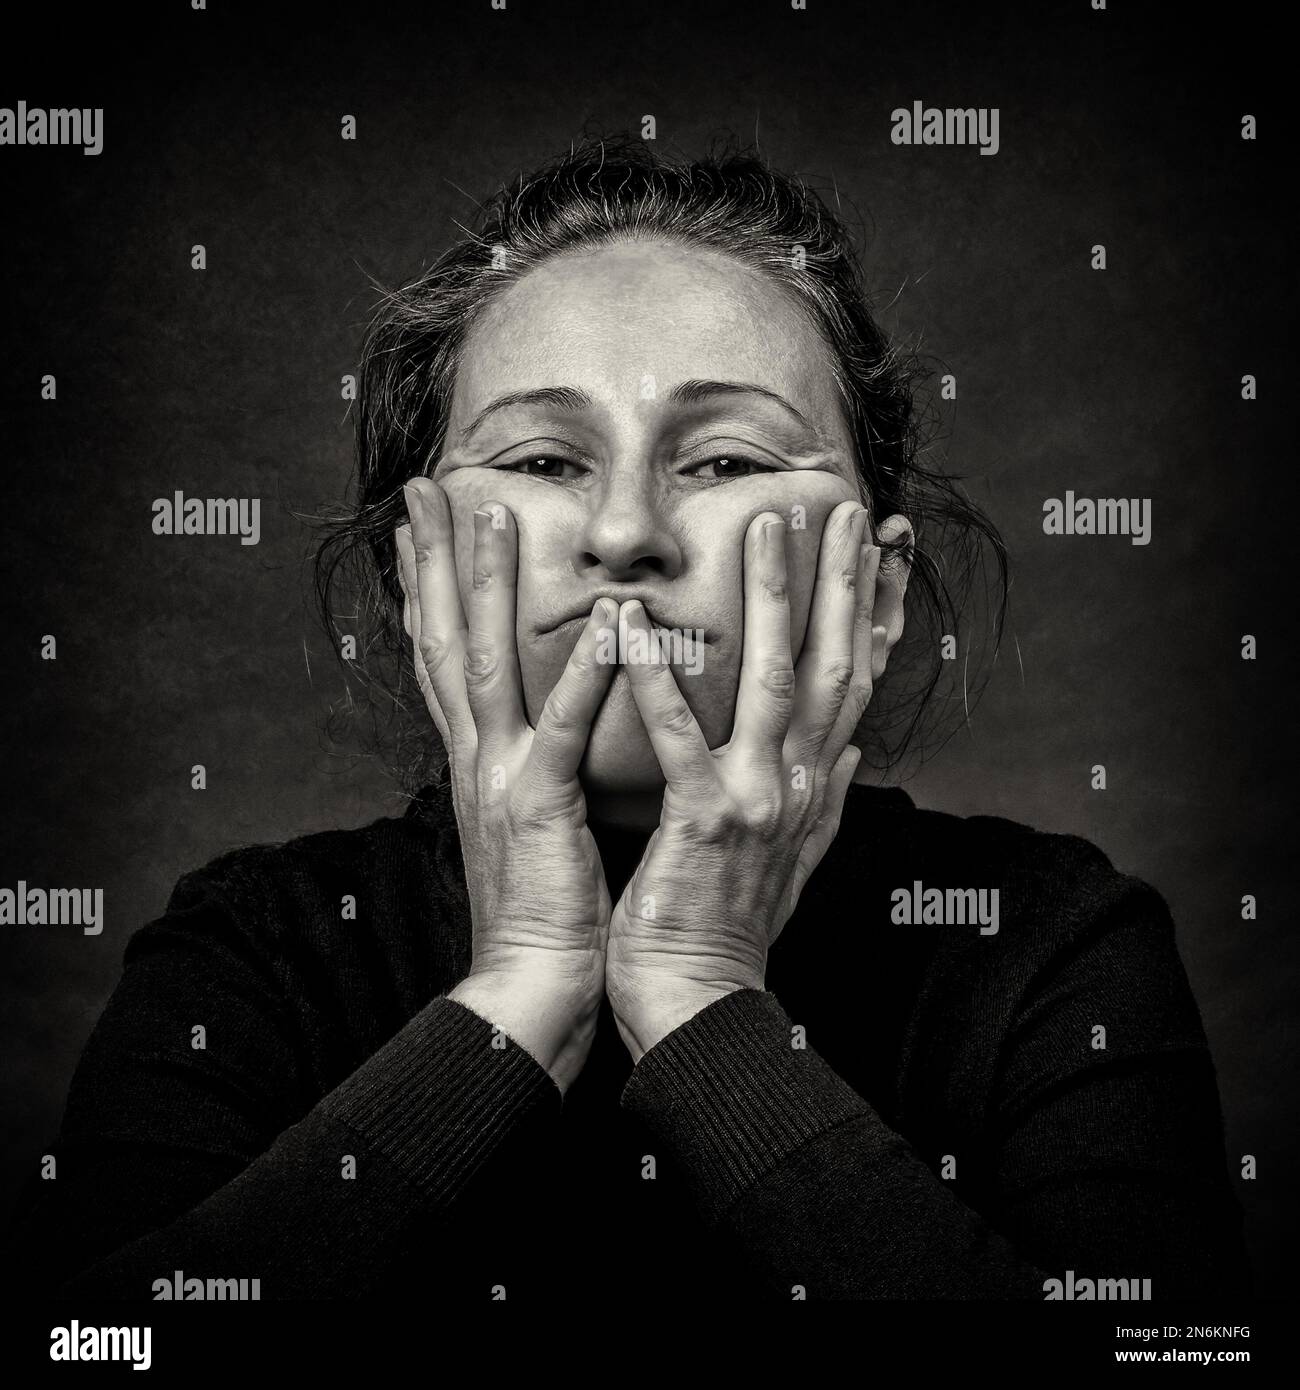 Begriffliches dunkles Porträt einer alten müden Frau, die ihre Gesichtshaut in hässlicher Grimasse streckt. Schwarzweiß-Filmkörnung. Stockfoto